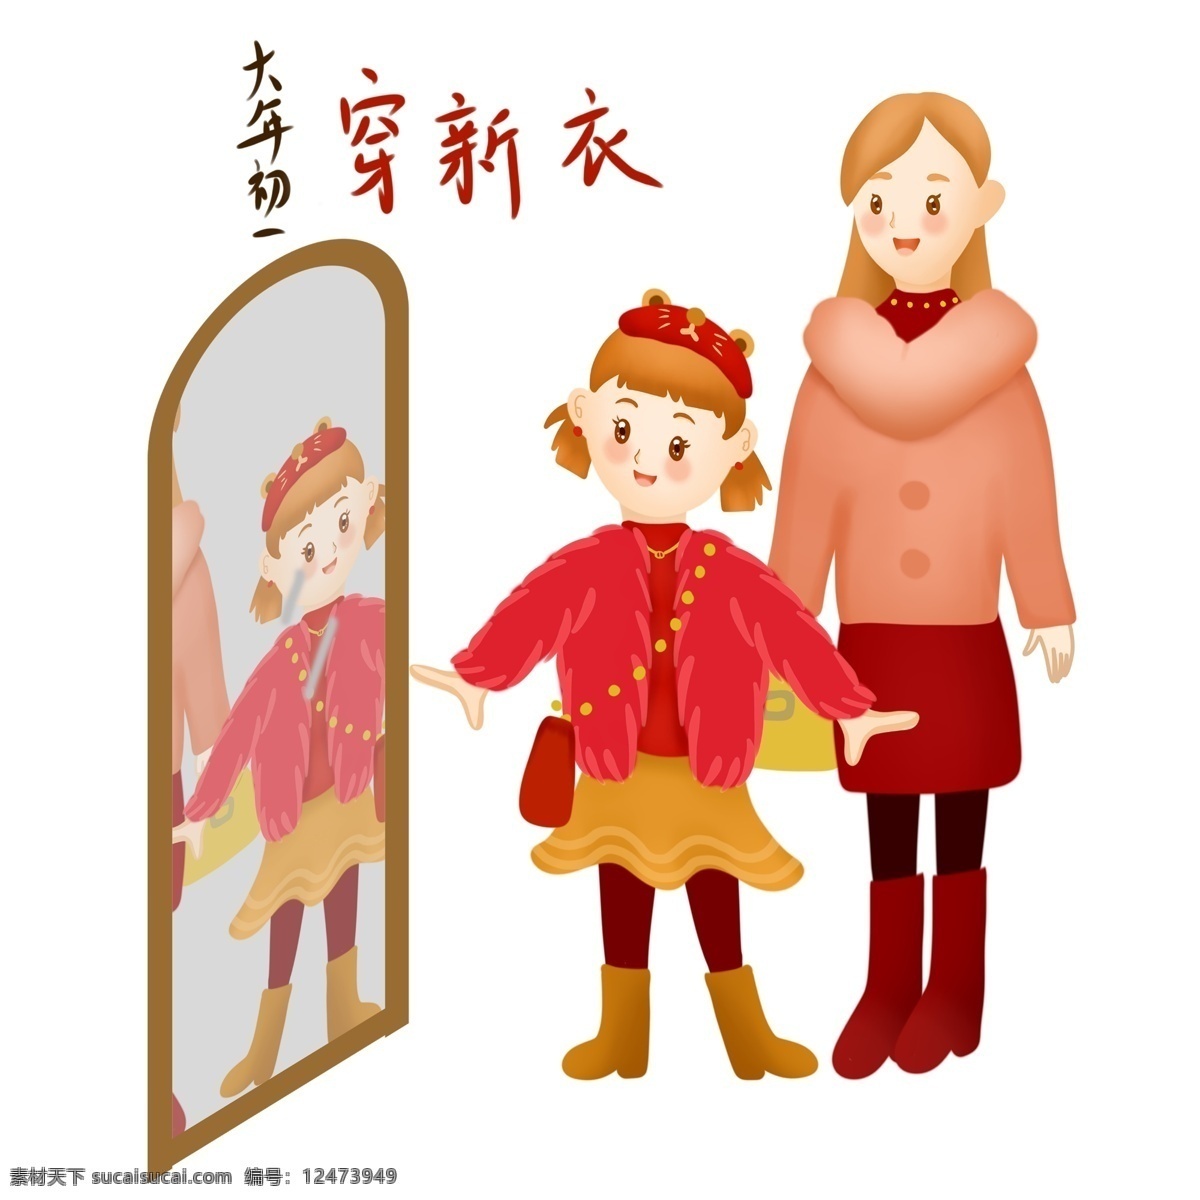 新年 春节 新气象 大年初一 穿 新衣 传统 习俗 新年习俗 穿新衣 新年新气象 2019年